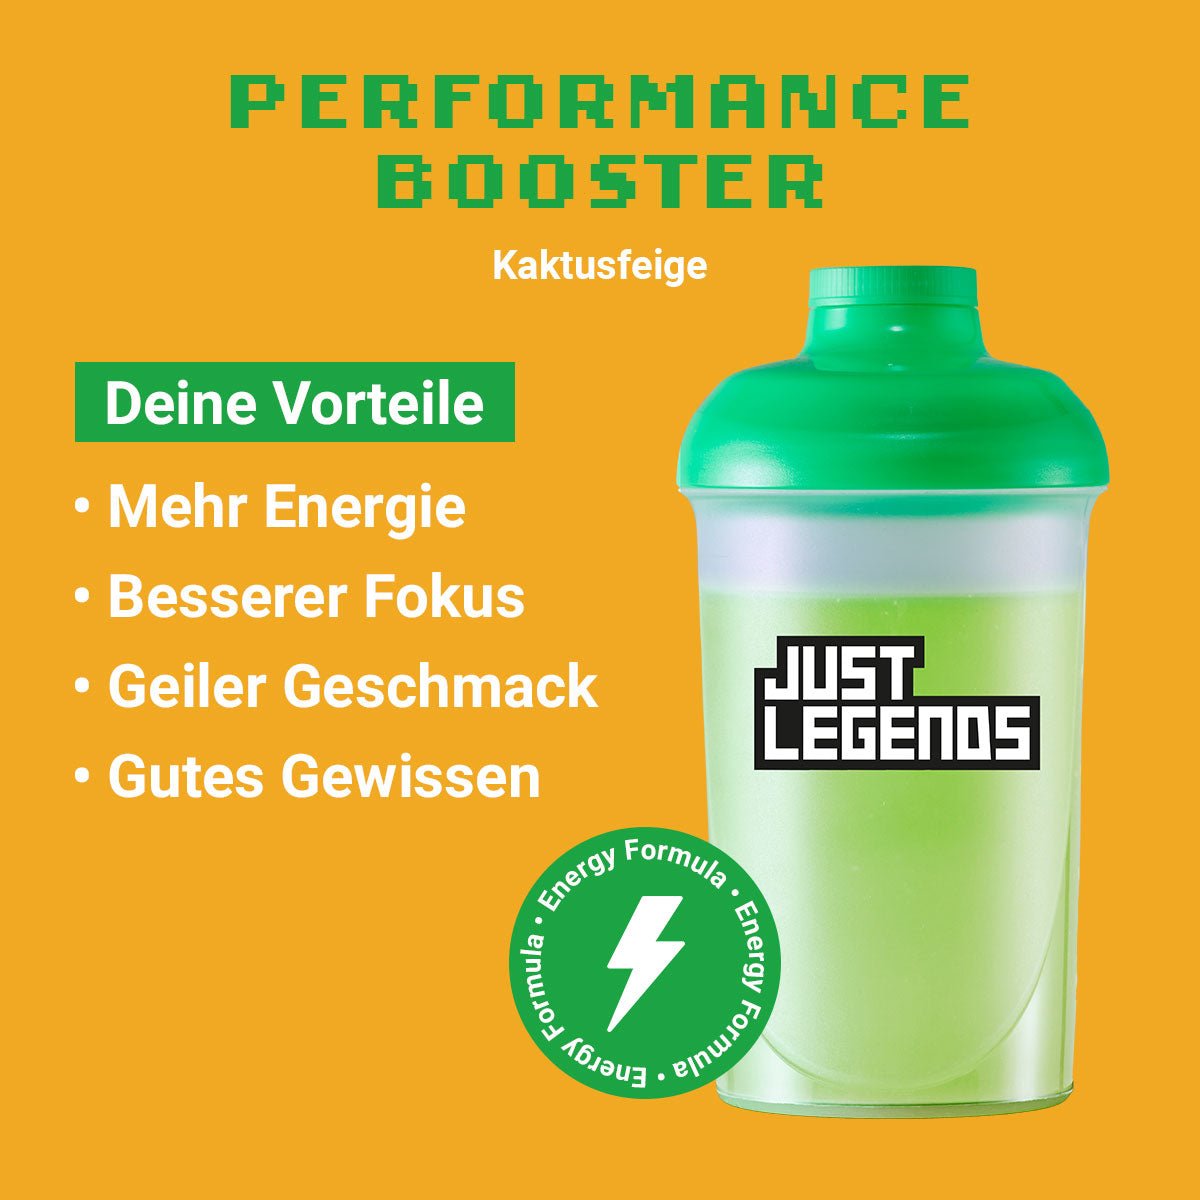 Just Legends Performance Booster Kaktusfeige | Funktionaler, veganer Performance Booster auf Pulverbasis ohne Zucker, mit wenig Kalorien, vielen Vitaminen und natürlichen Aromen.